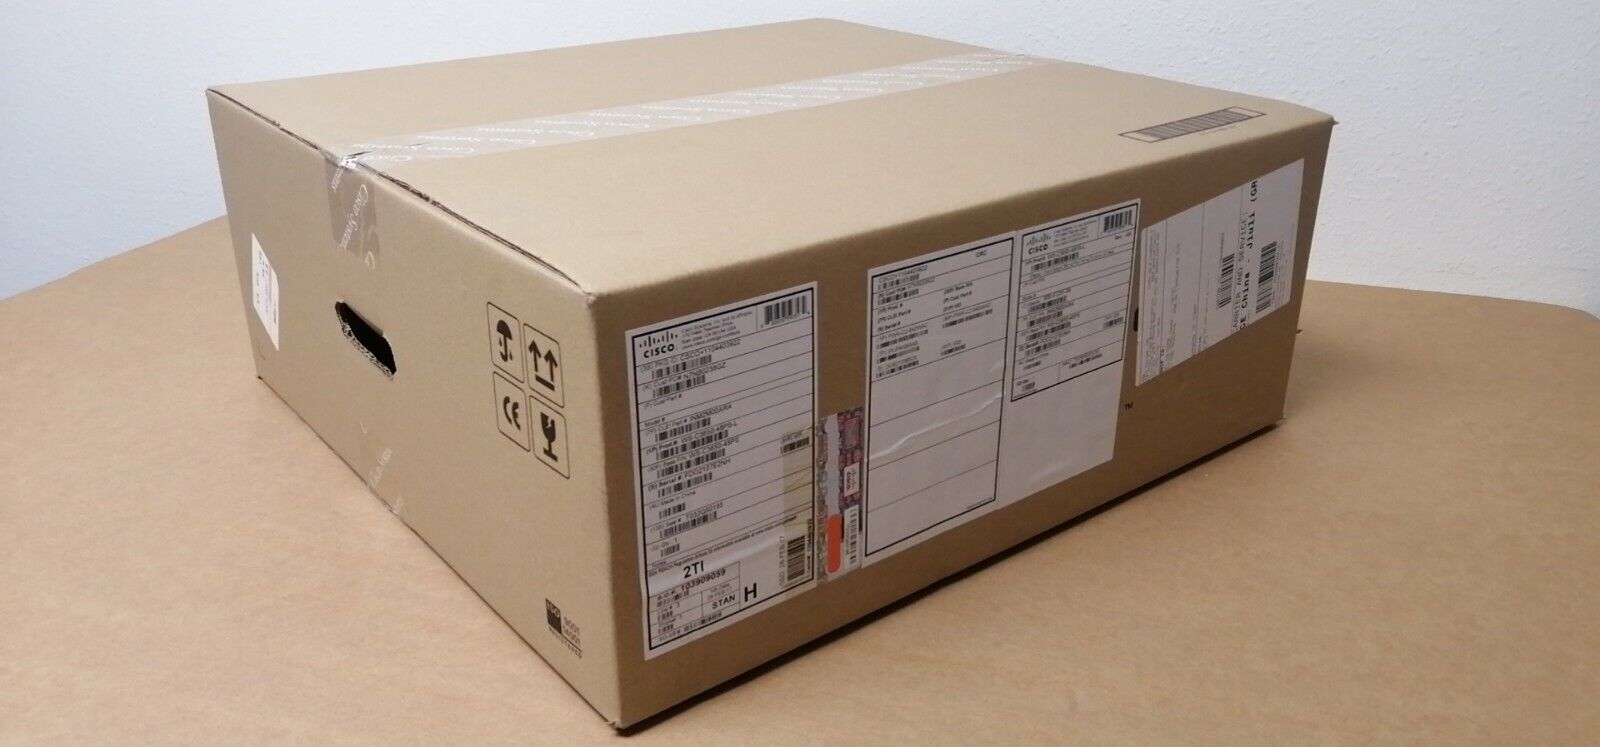 New in Sealed box Cisco ASA5525-FPWR-K9 100% New Original CISCO